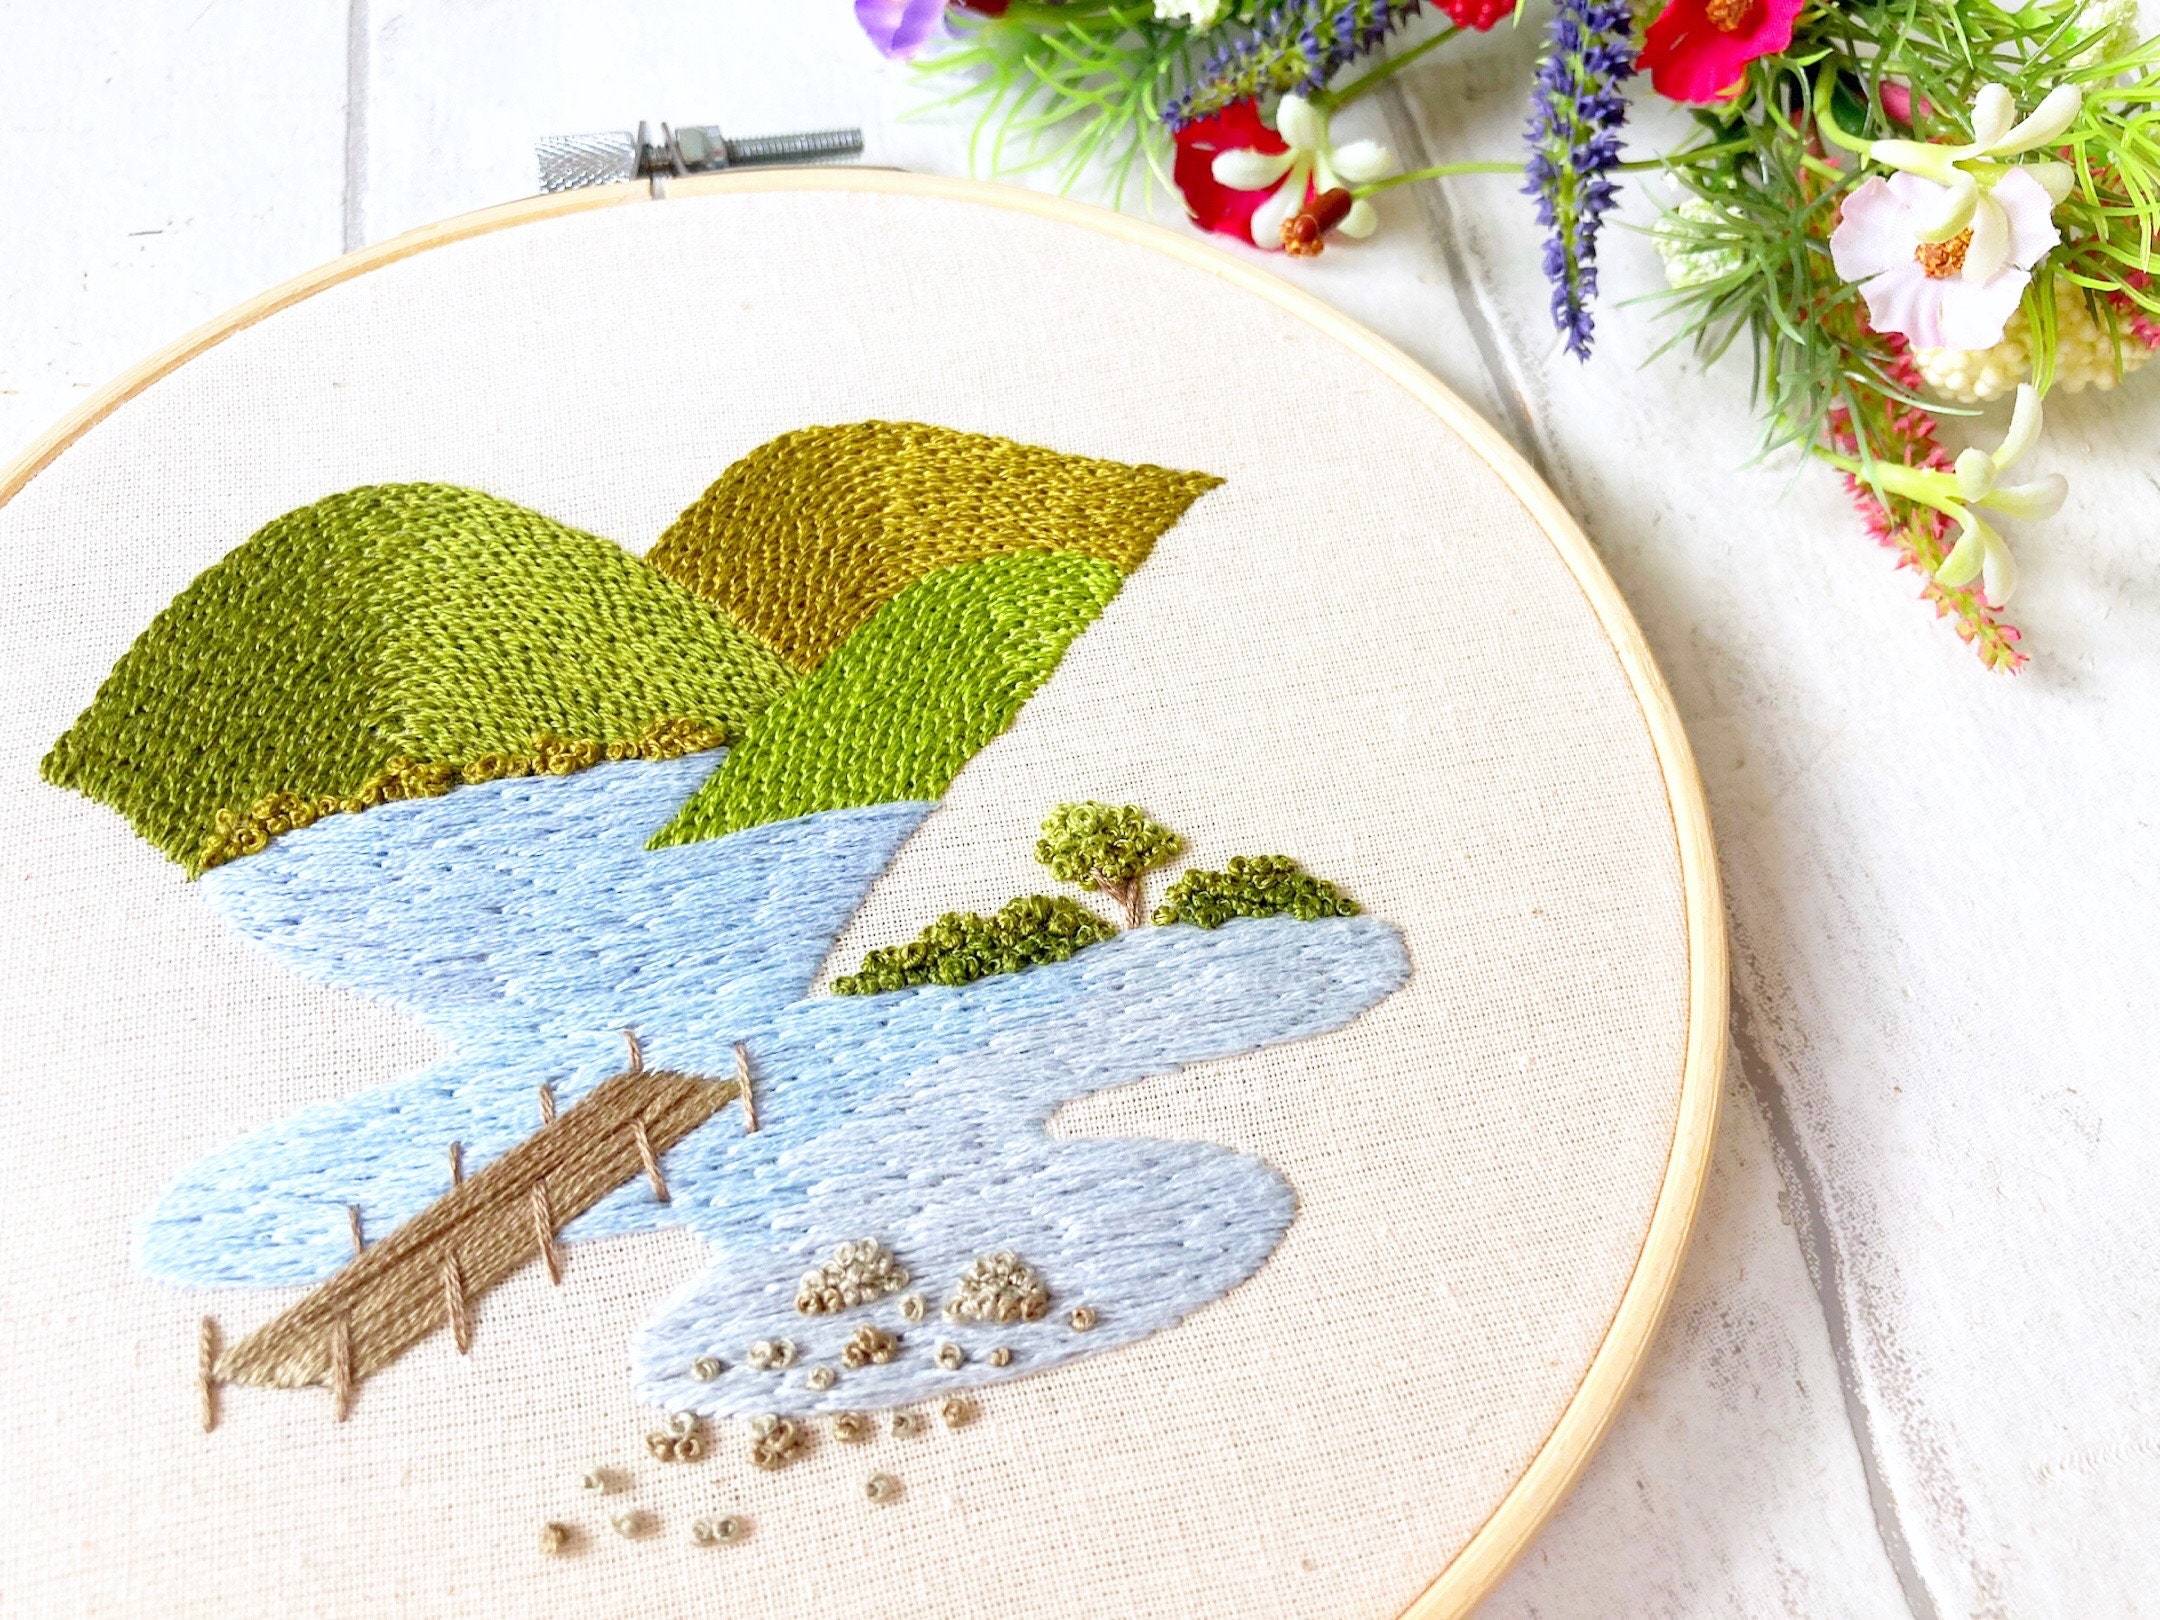 Lake Life - Hand Stitch Embroidery Transfer Pattern